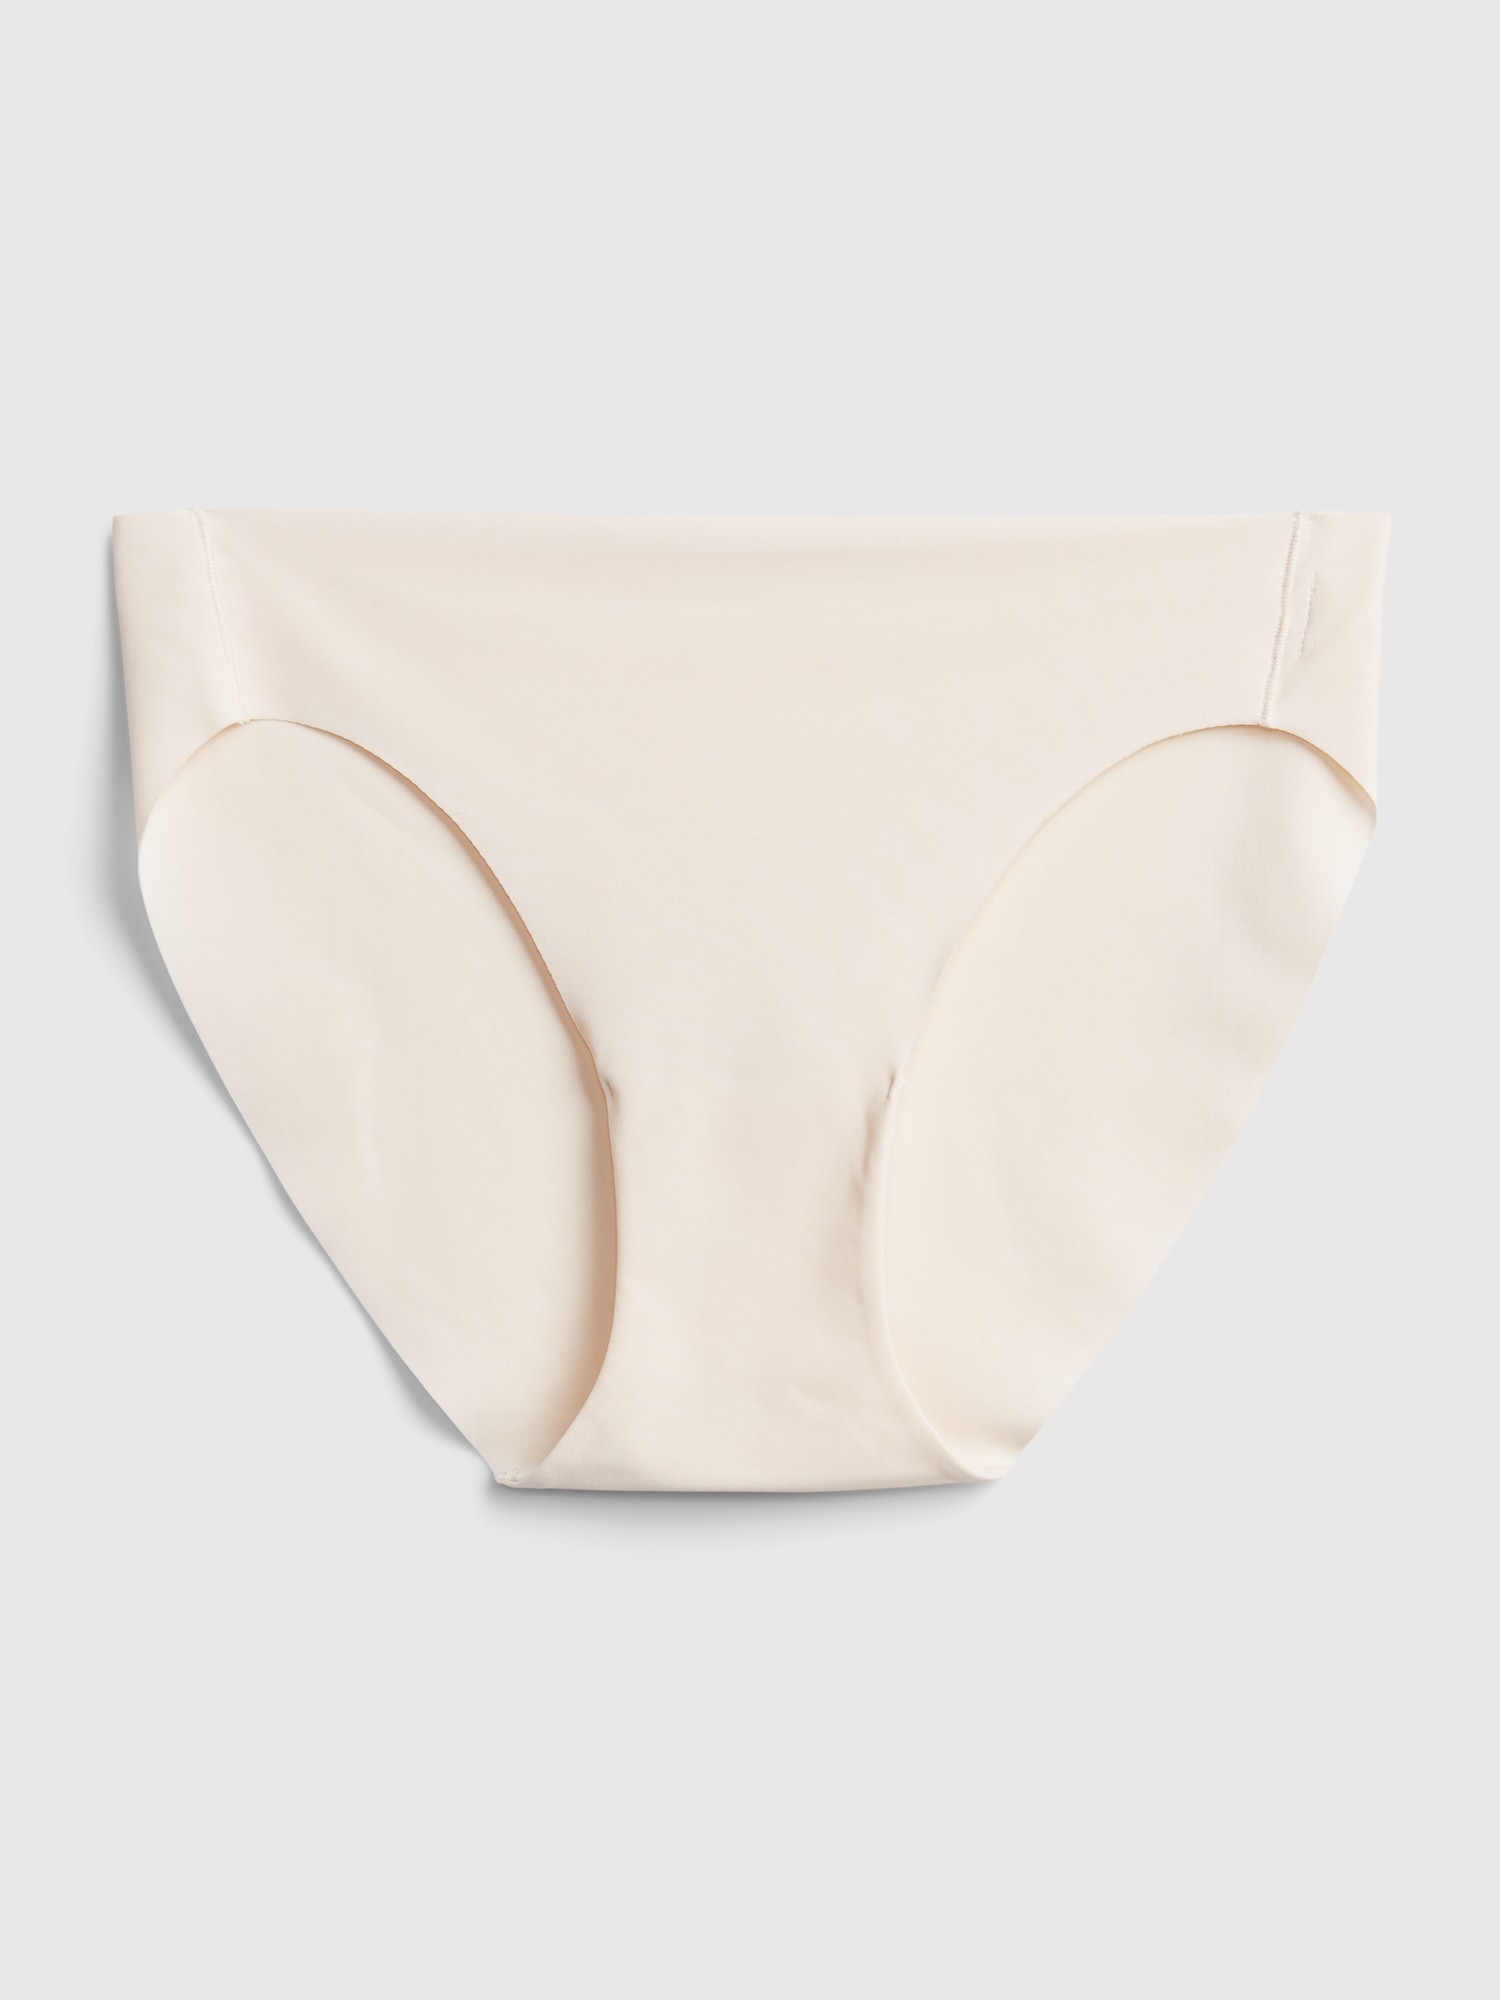 Buy Jofreku Seamless Underwear Invisible Bikini No Show Nylon Spandex Women  Panties 5 Pack at